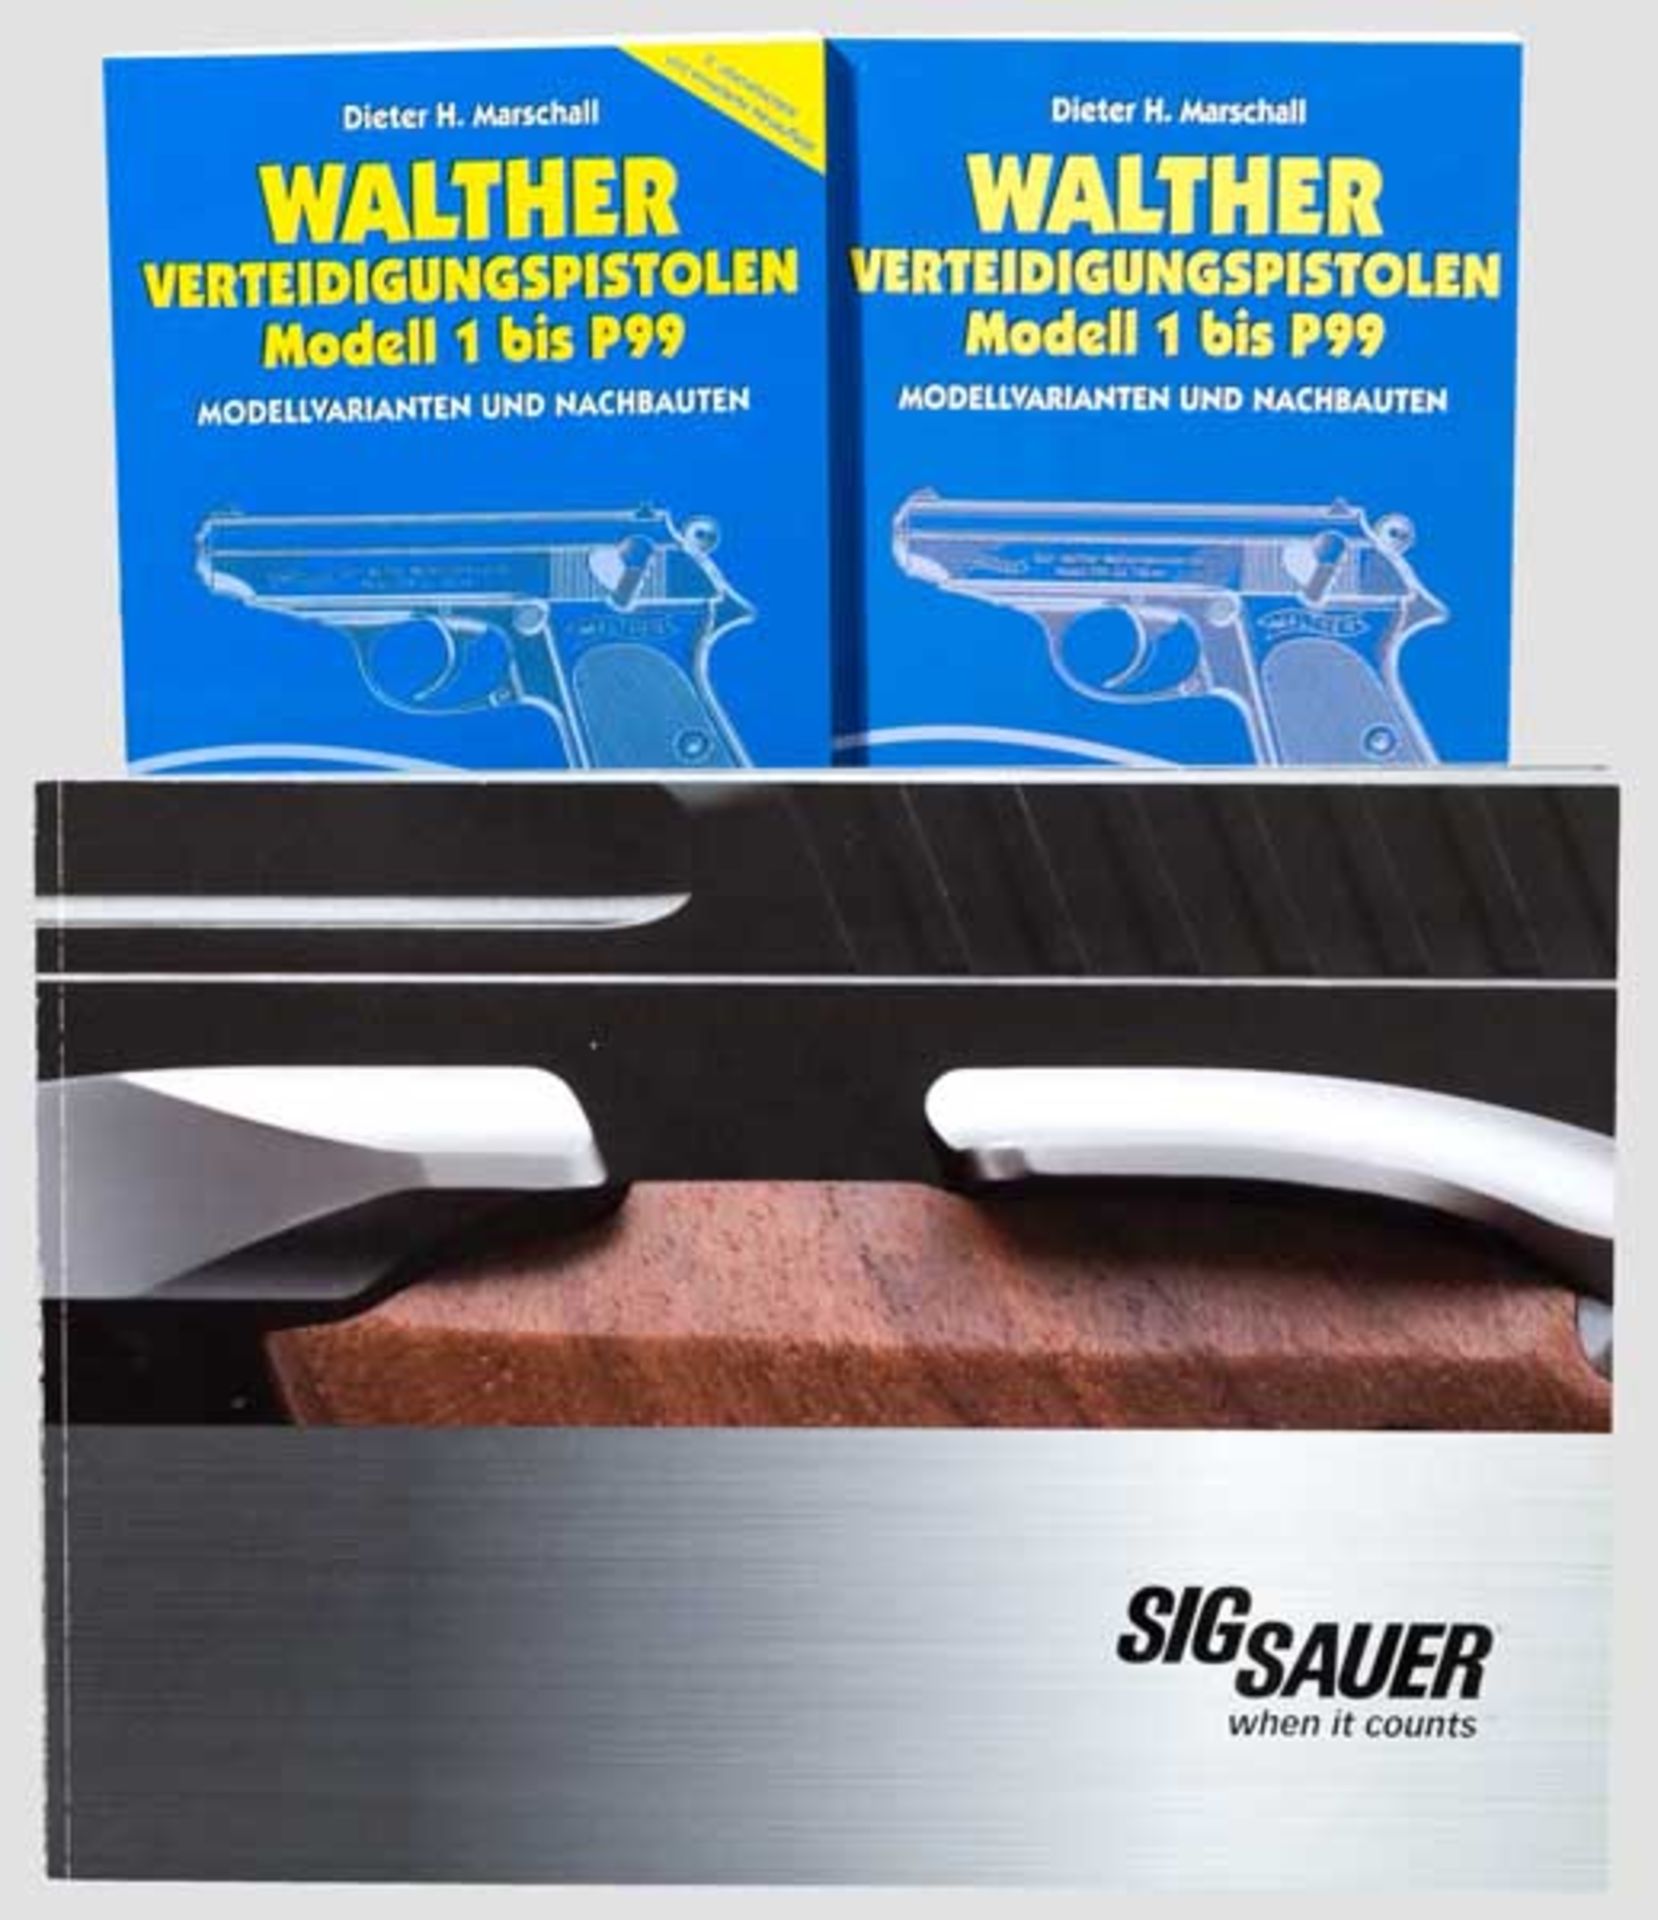 Dieter Marschall, Walther Verteidigungspistolen Modell 1 bis P99, 12. und 2. Auflage 1. Auflage